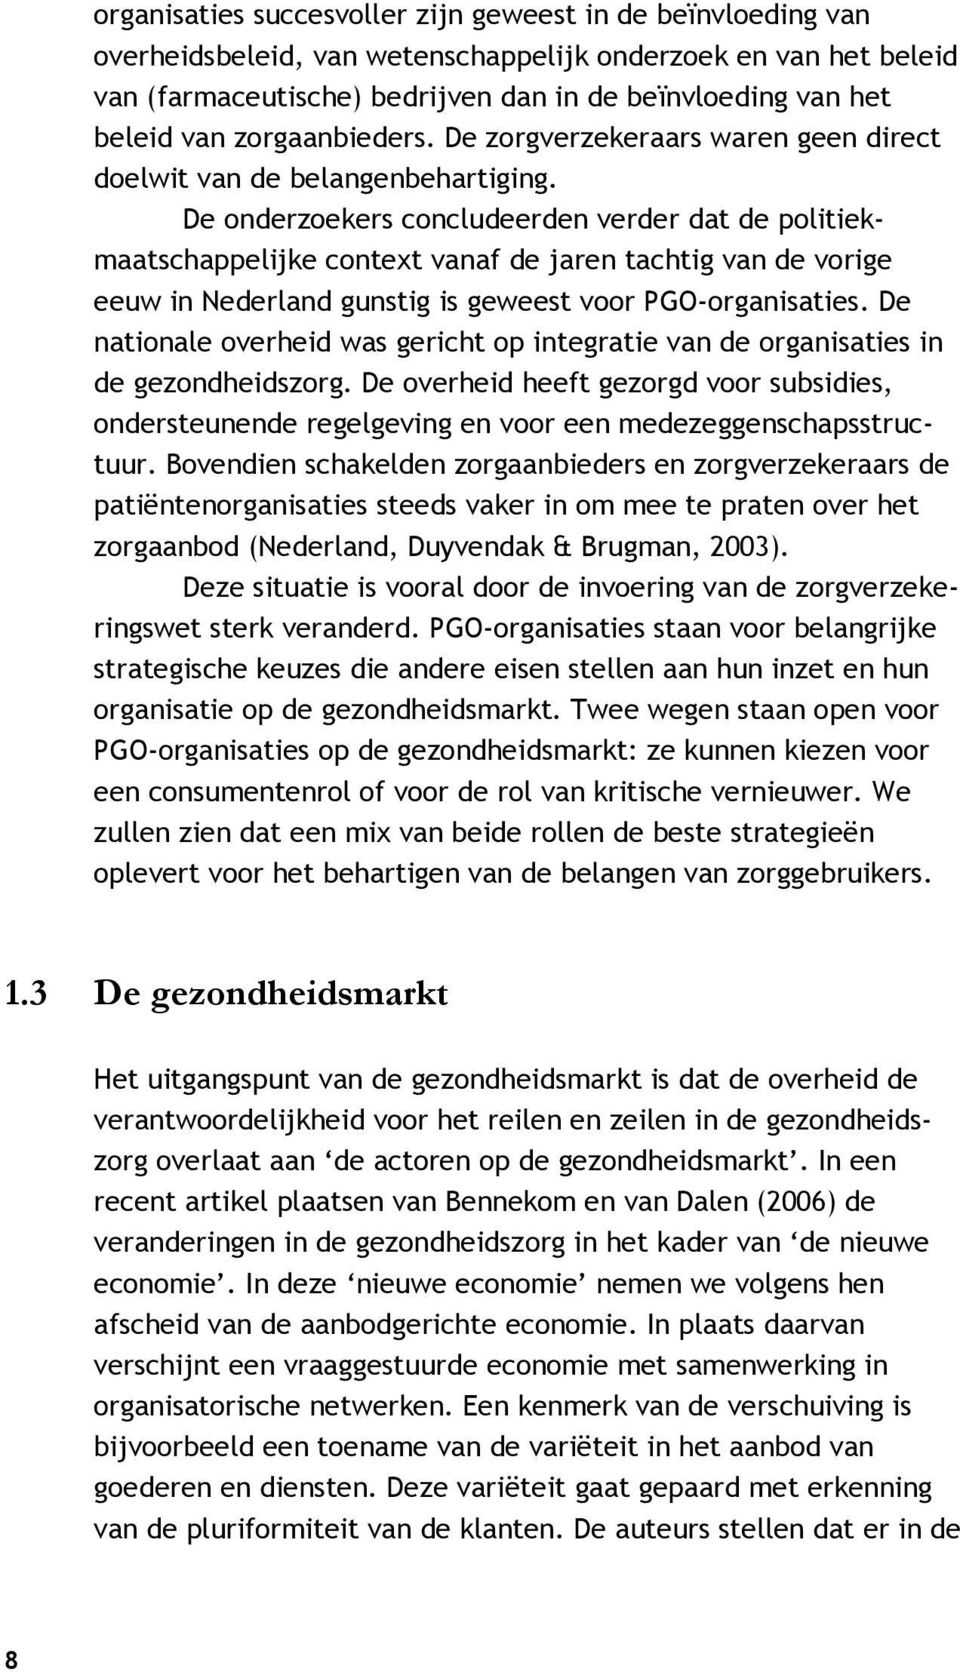 De onderzoekers concludeerden verder dat de politiekmaatschappelijke context vanaf de jaren tachtig van de vorige eeuw in Nederland gunstig is geweest voor PGO-organisaties.